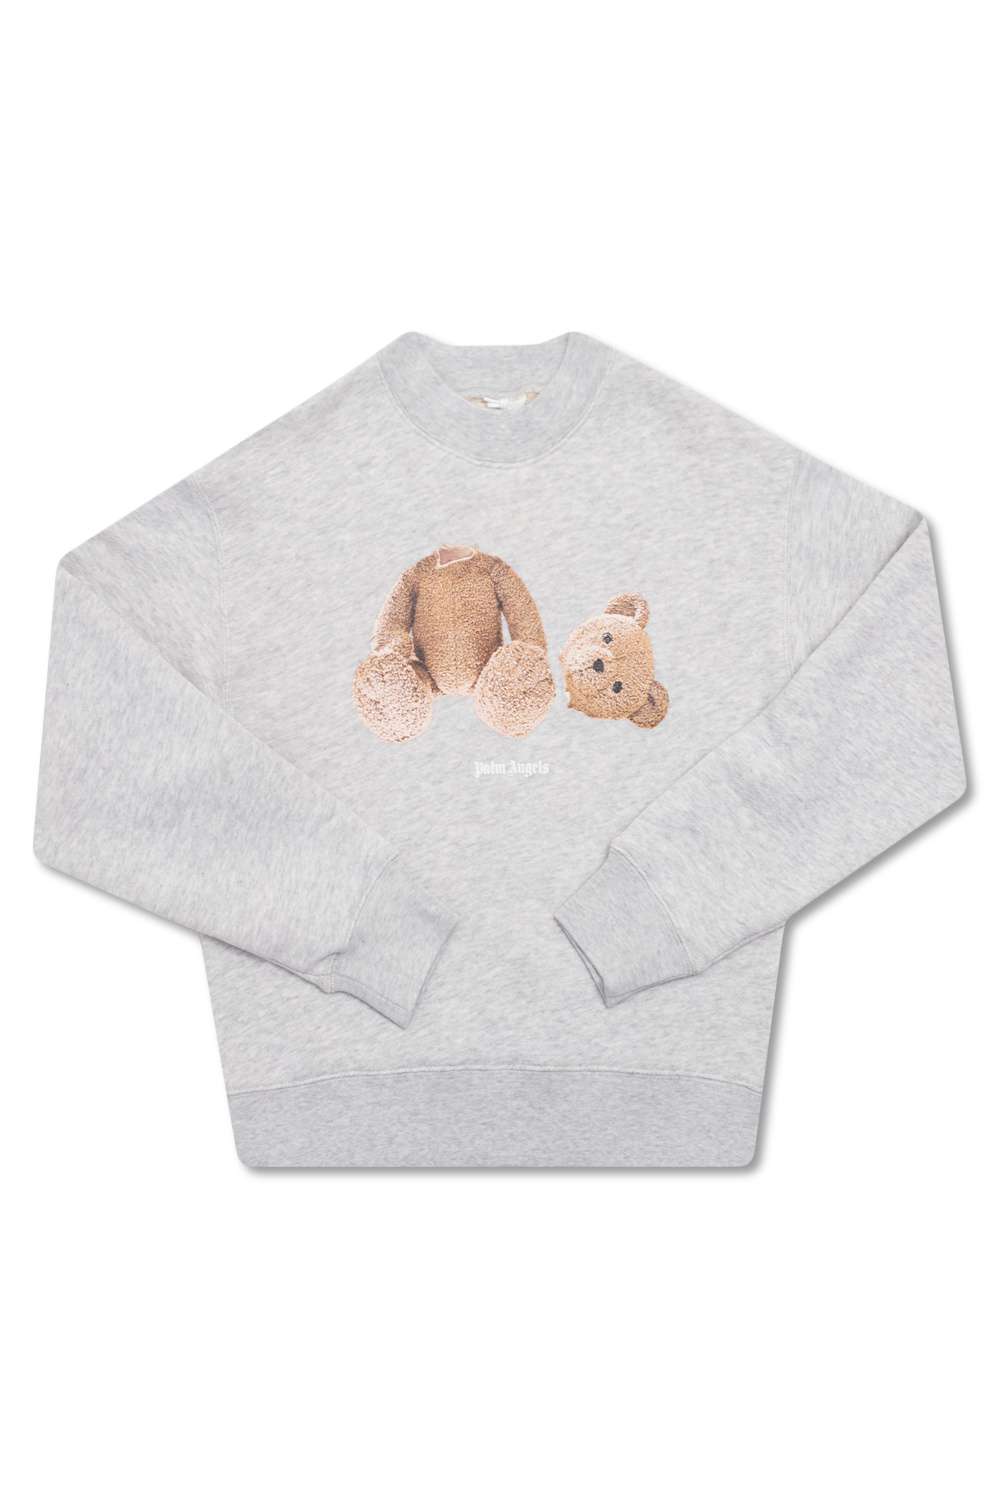 Palm Angels Kids Printed houndstooth sweatshirt